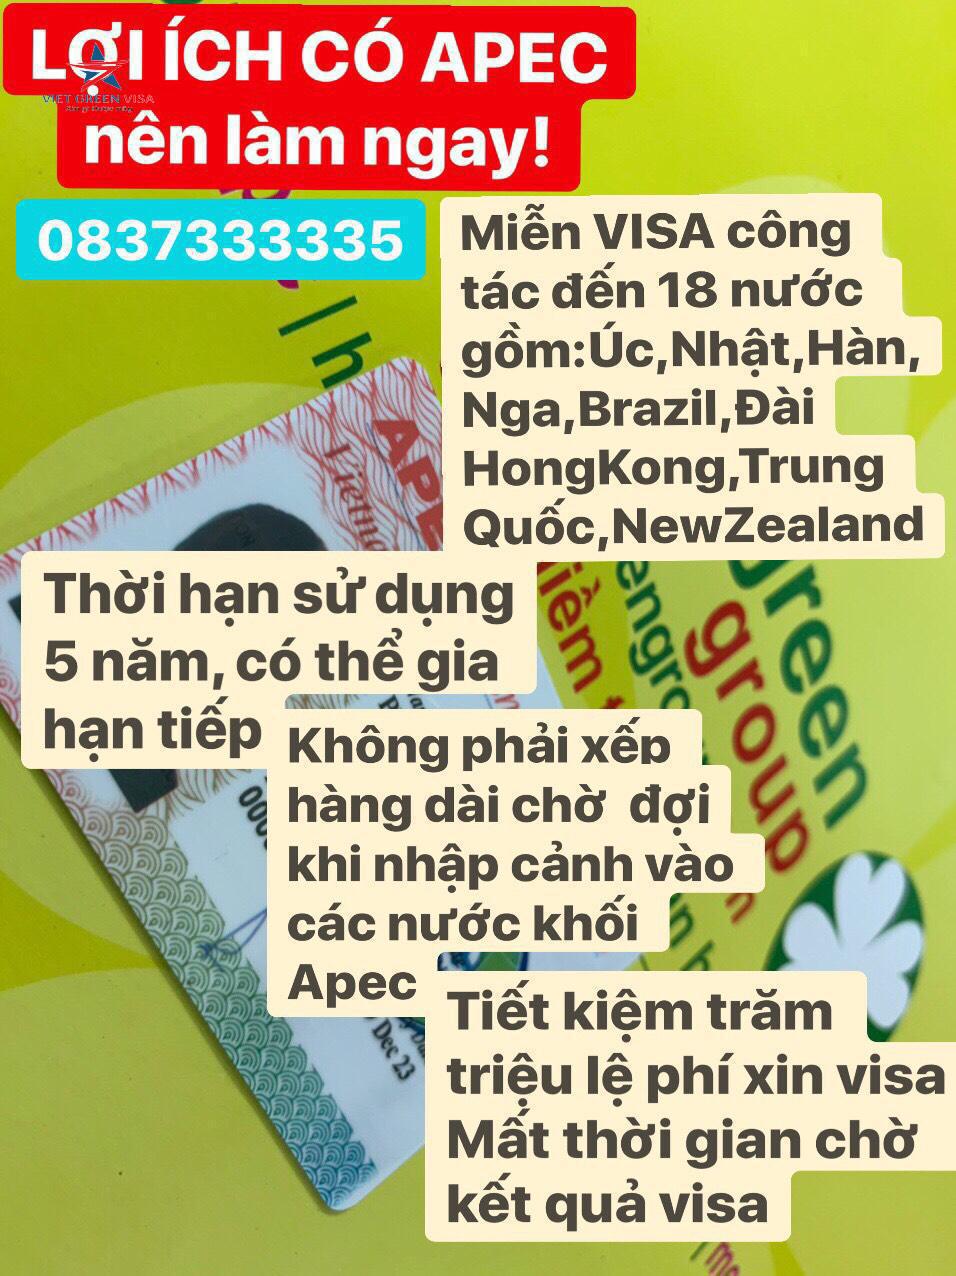 Dịch vụ làm thẻ Apec tại Khánh Hòa uy tín